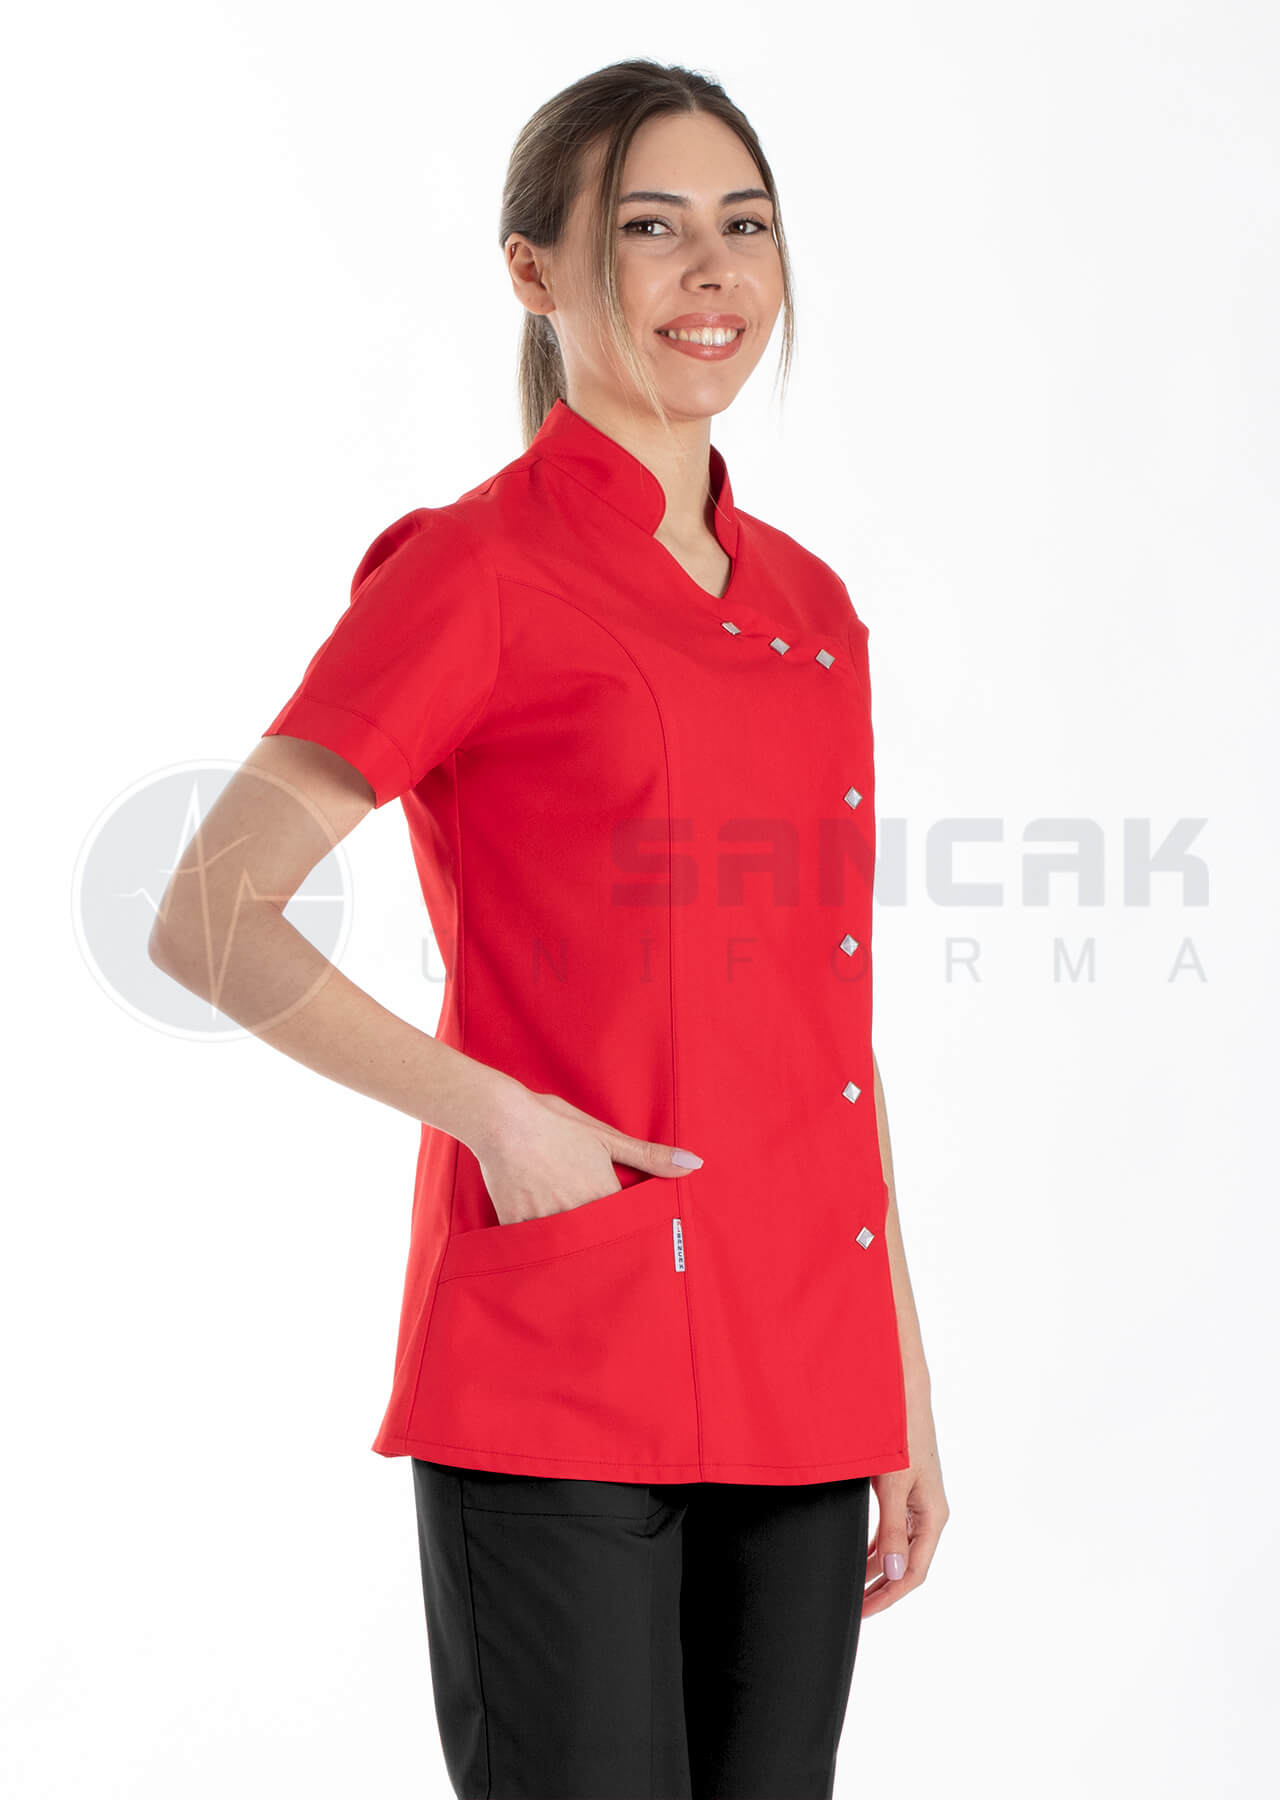 Luxe Flex Kırmızı/Siyah Likralı Hemşire ve Doktor Forması Takımı